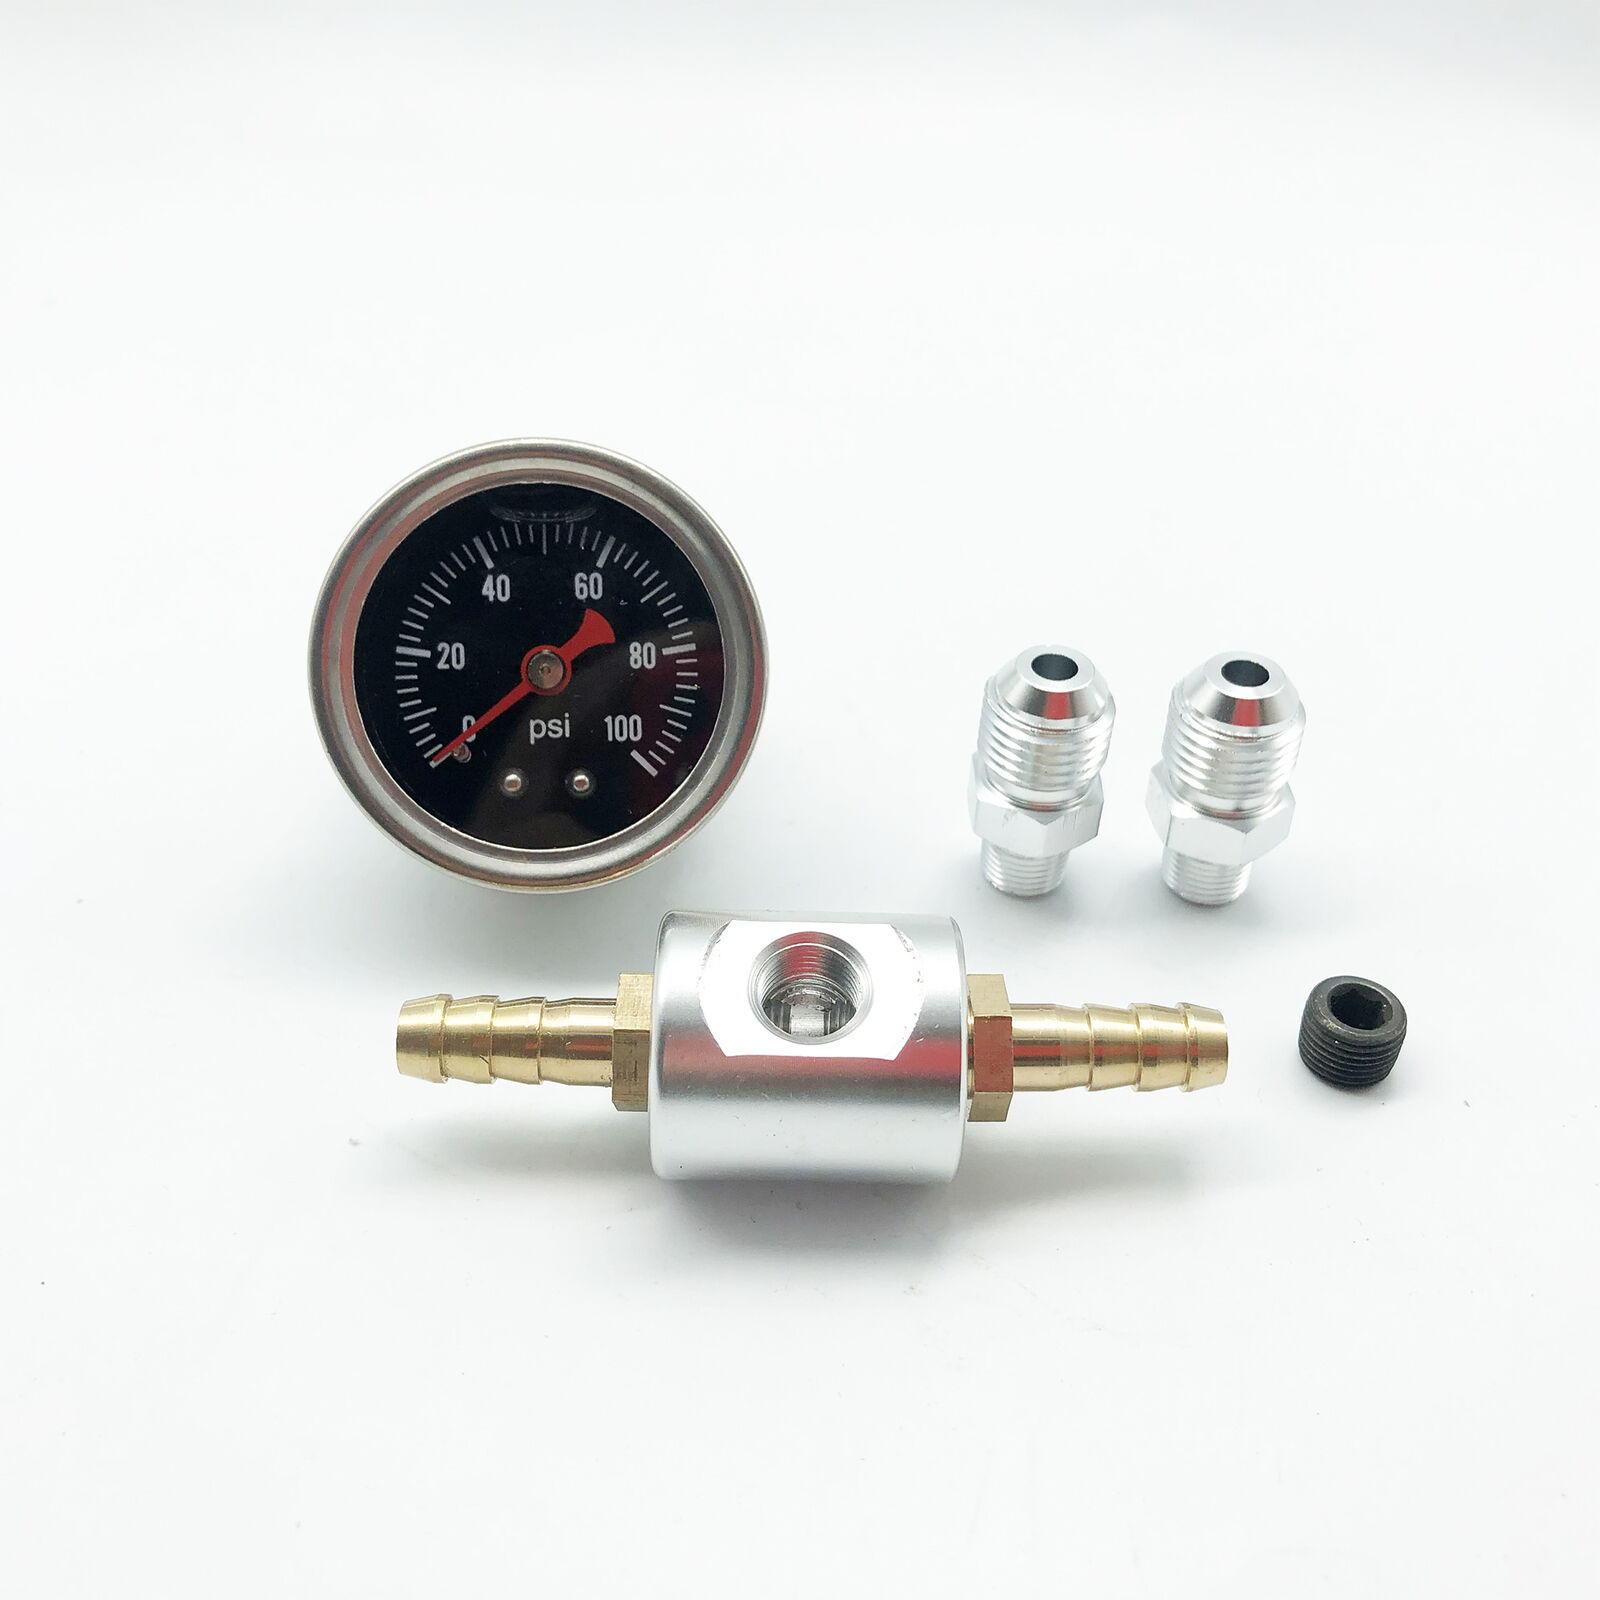 Fuel Pressure Regulator Gauge 0-100psi Liquid Filled 1/8 NPT W/Adaptor Adapter